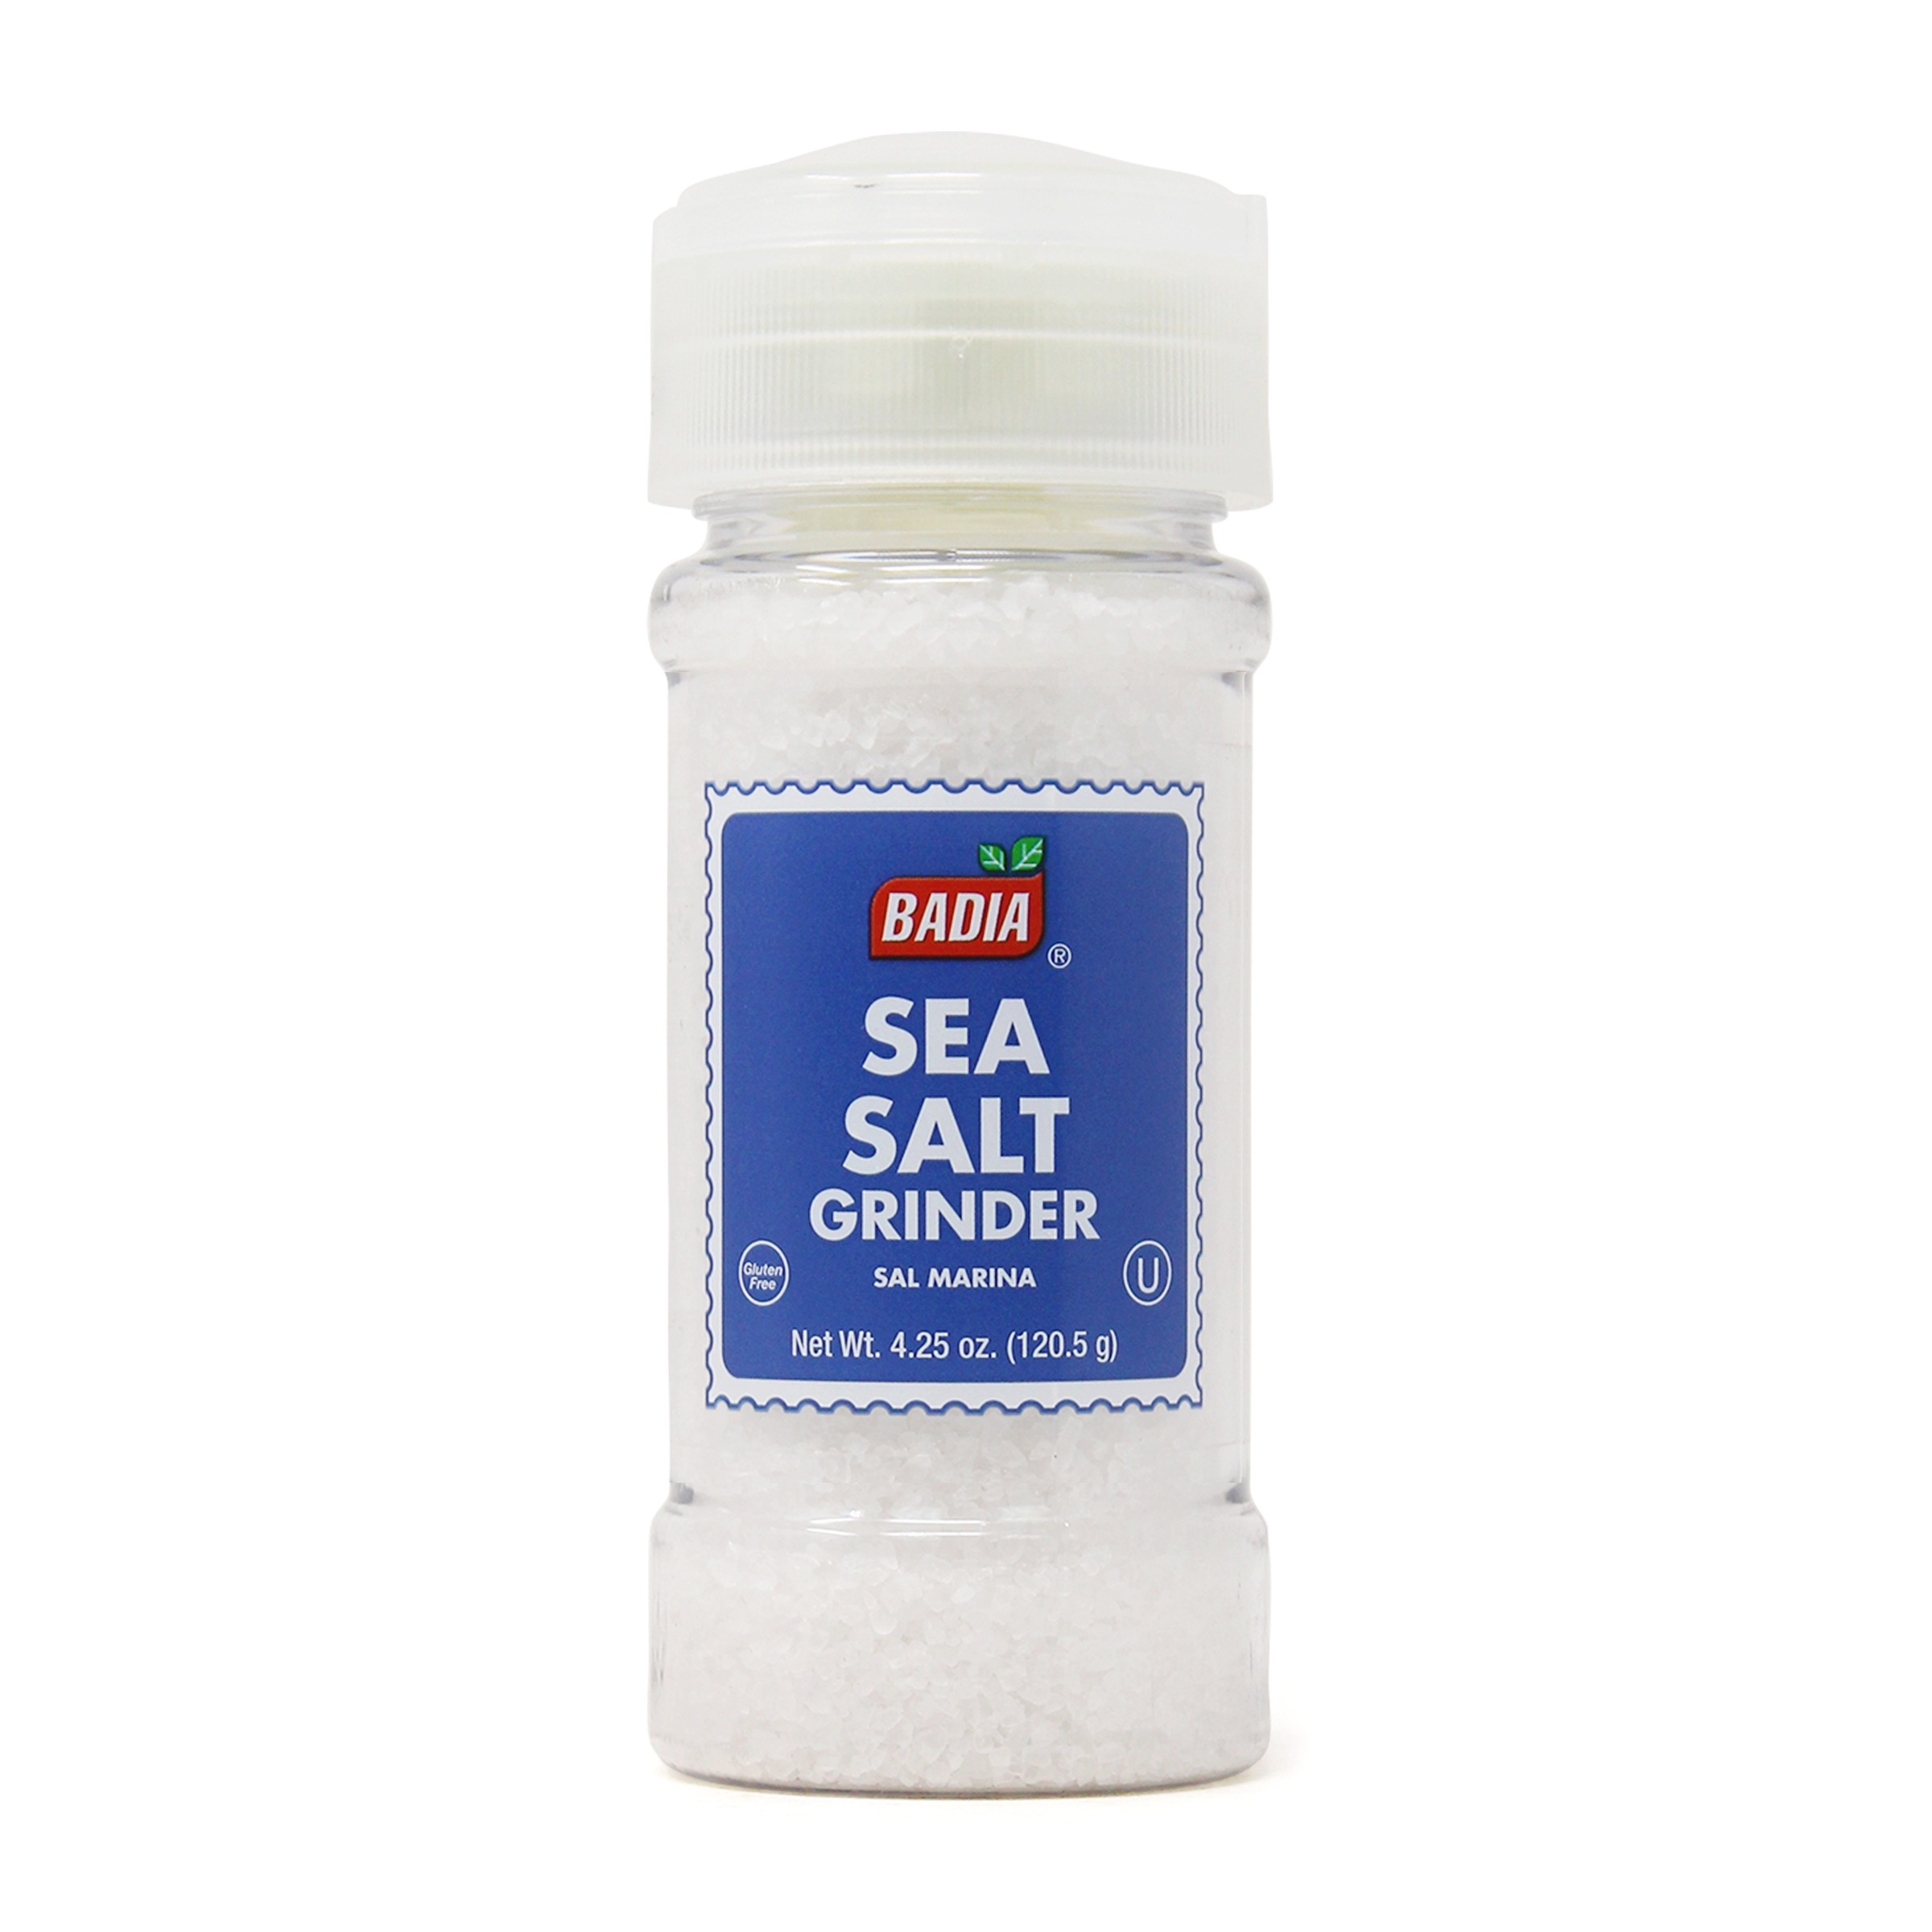 Nice! Sea Salt Grinder - 3.5 oz